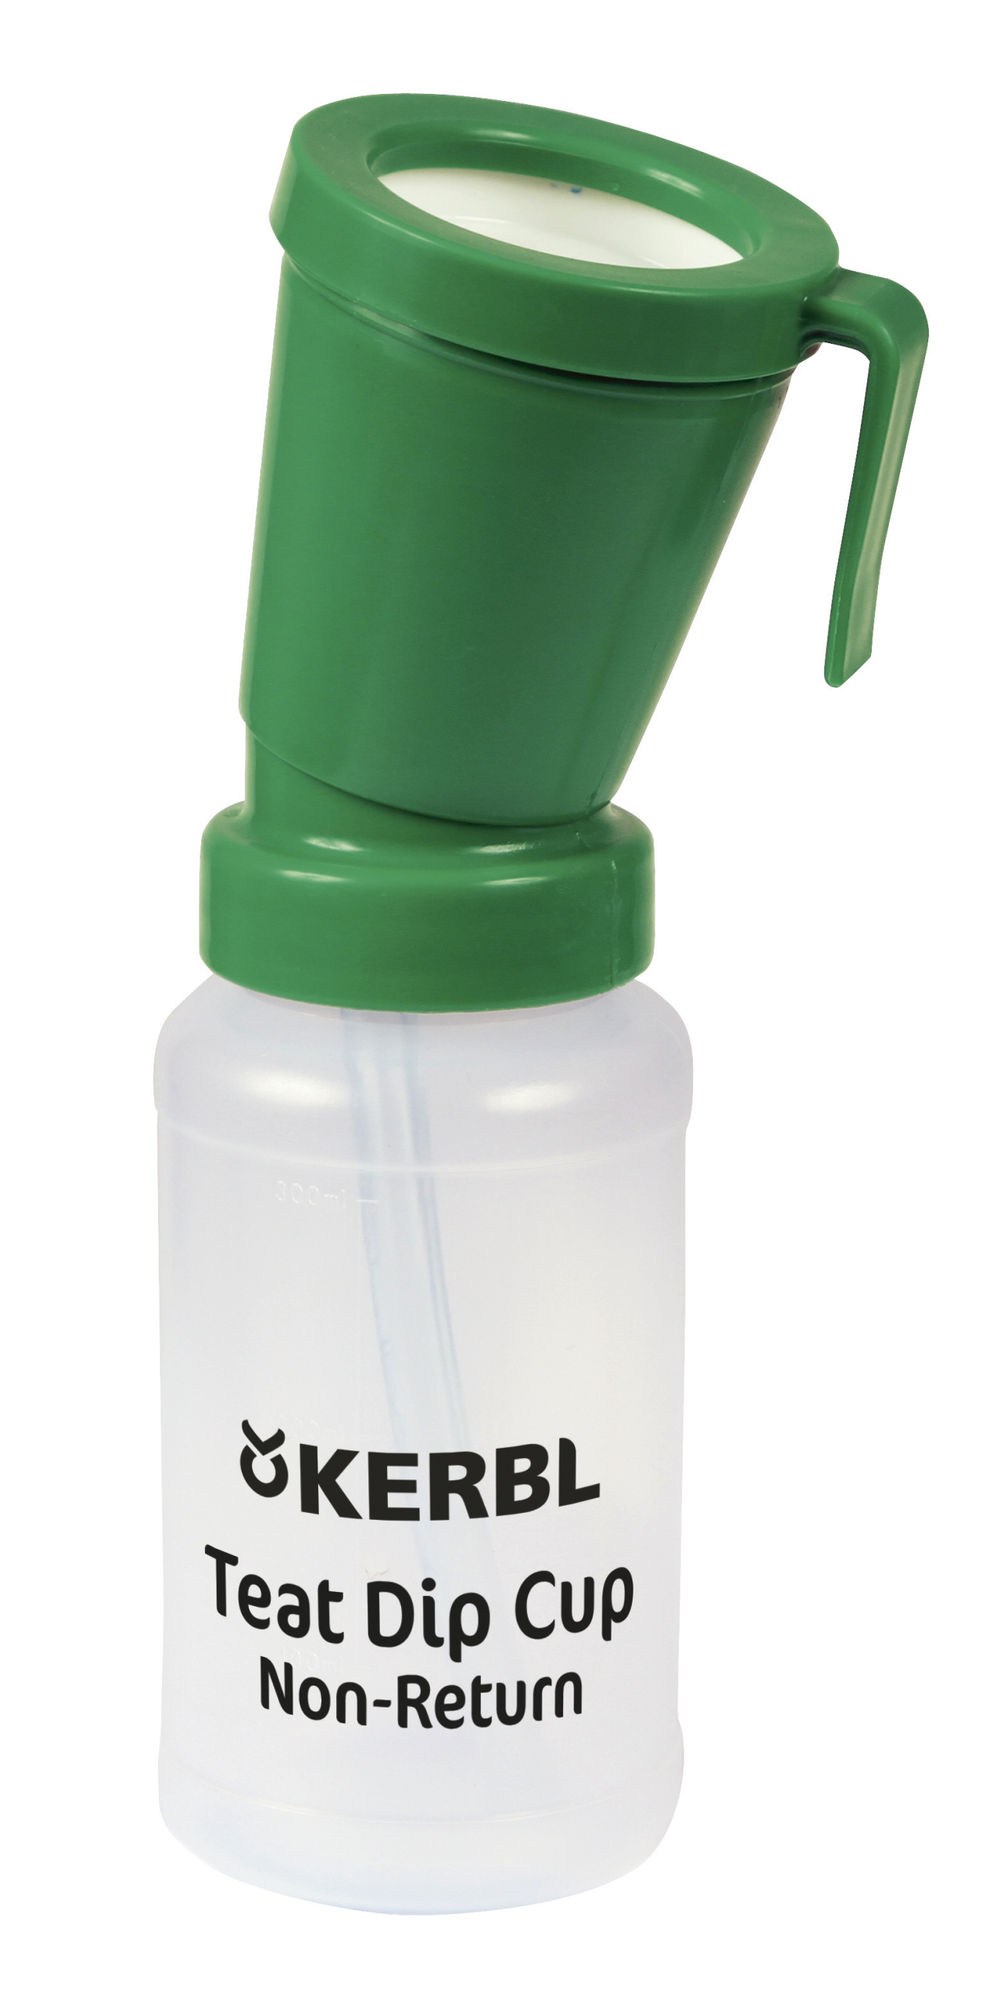 Kerbl Dippbecher Non-Return grün